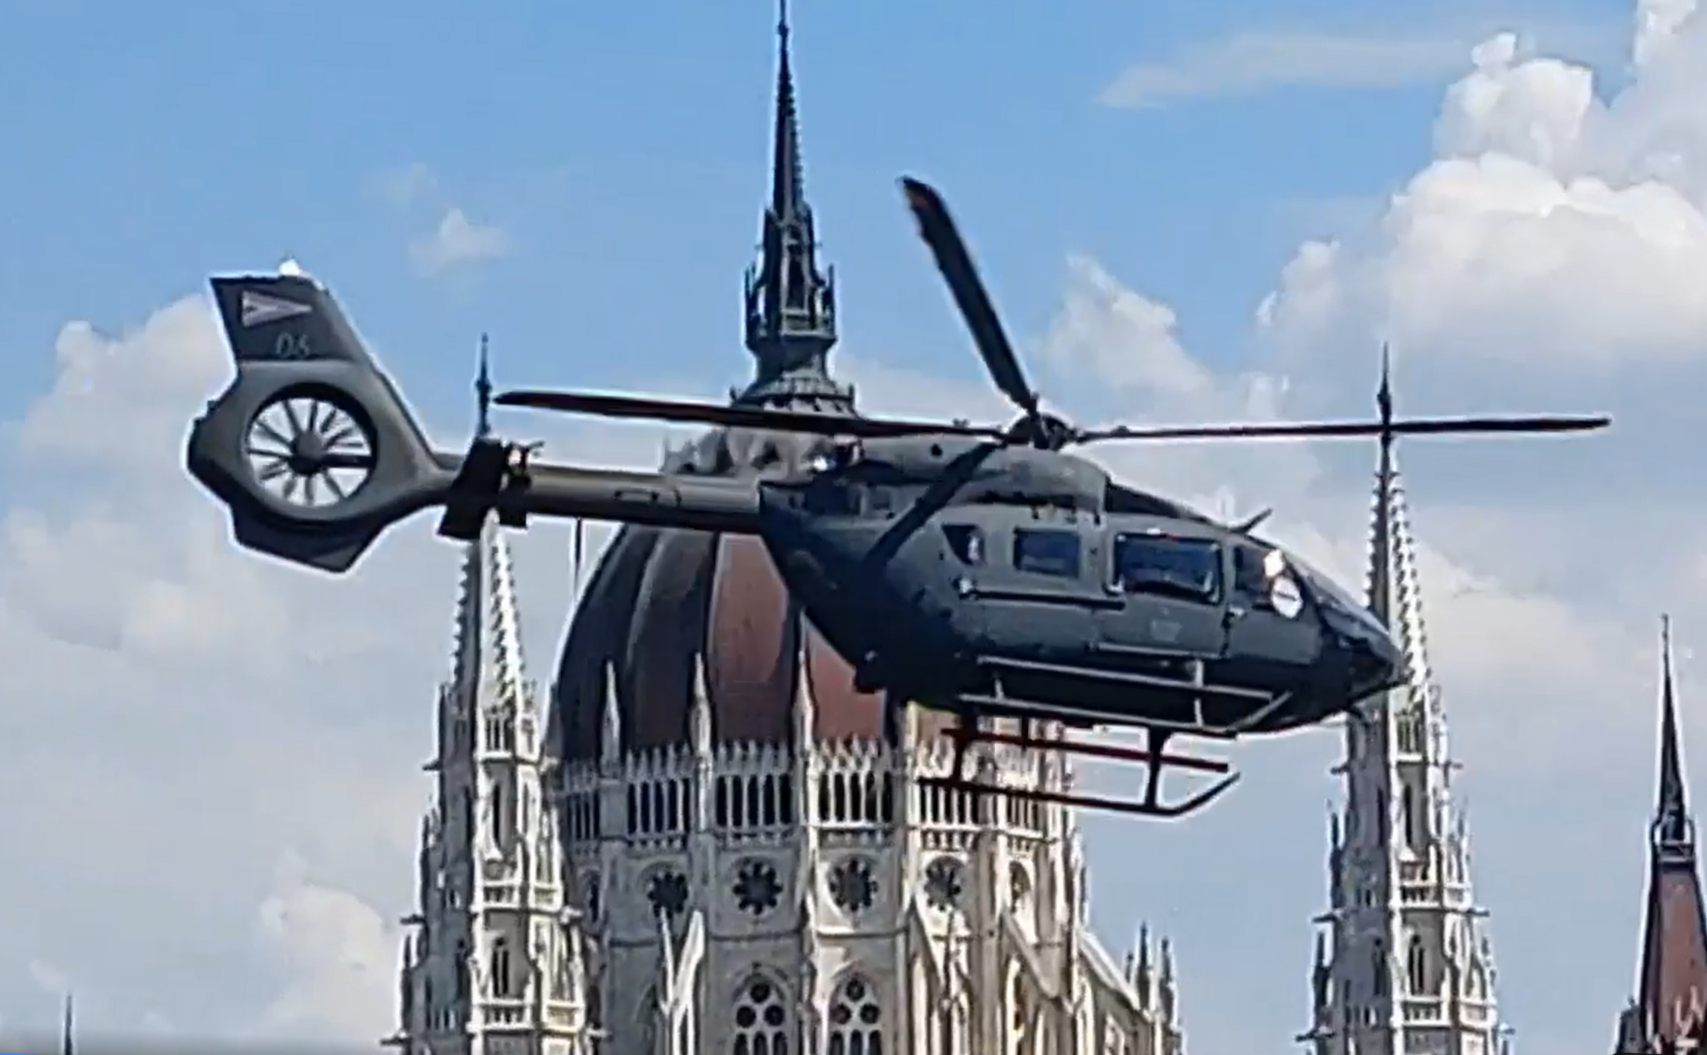 Gemeinsame kroatisch-ungarische Untersuchung des Hubschrauberabsturzes